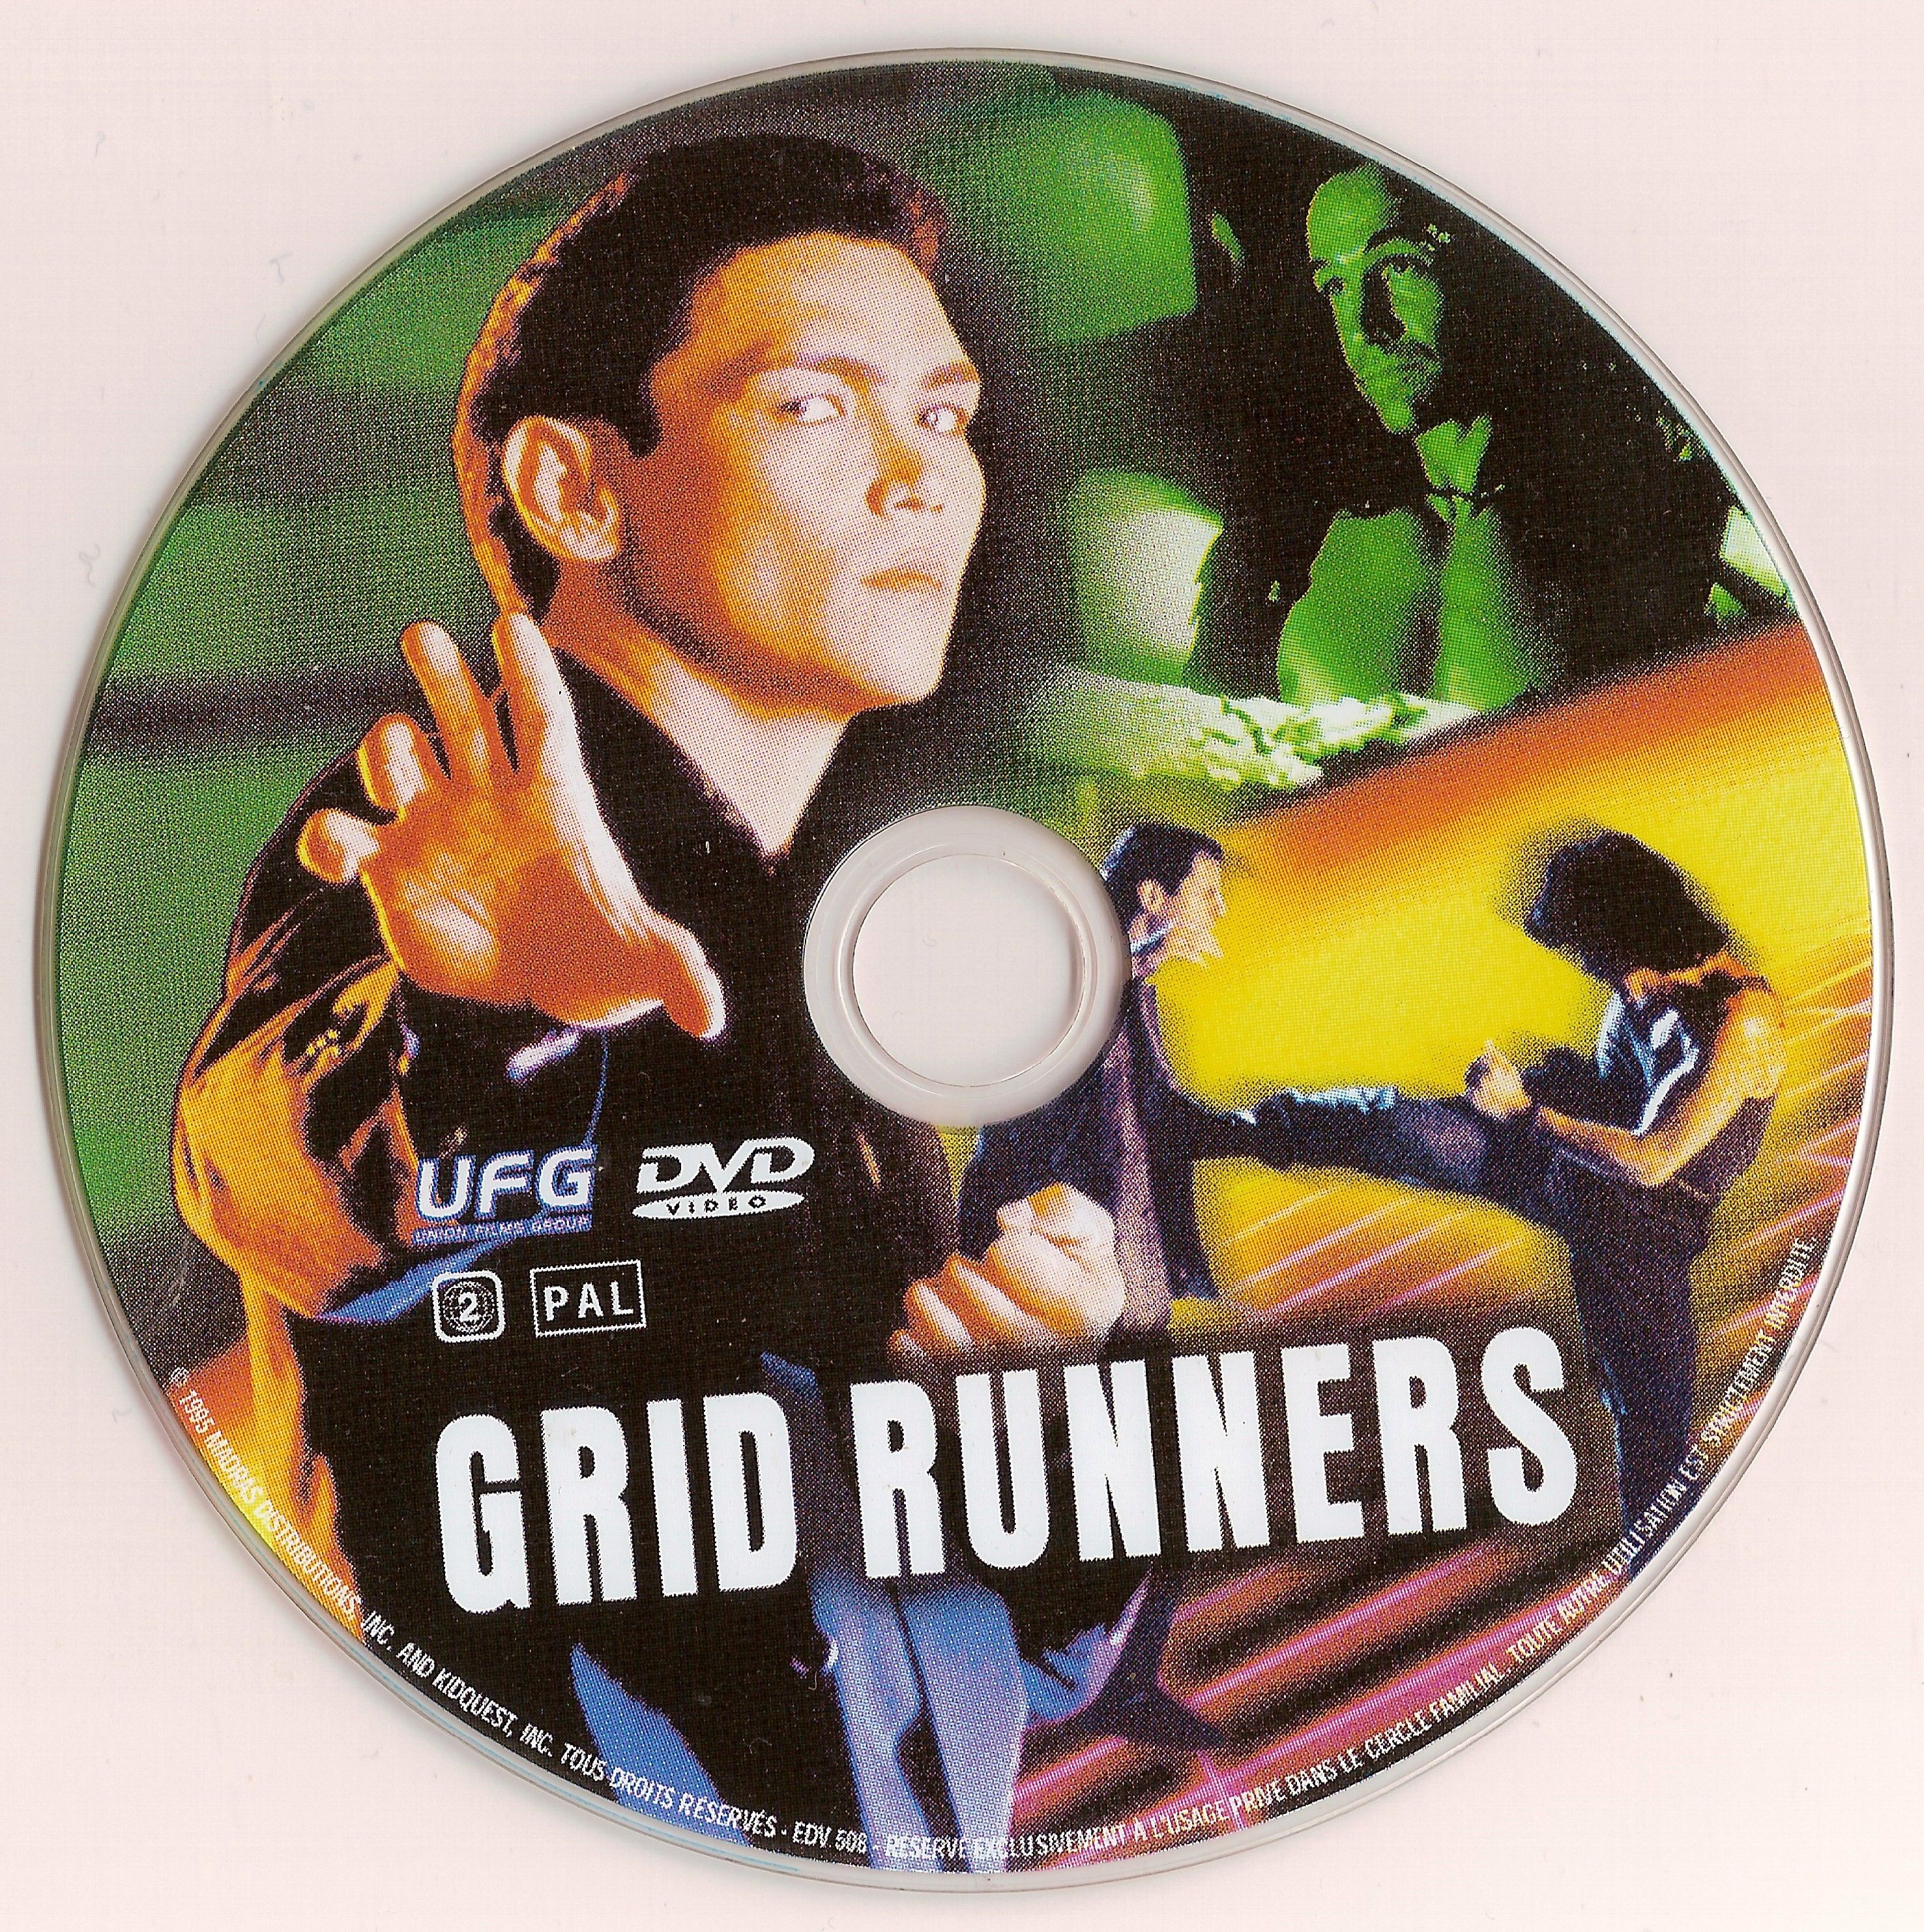 Grid runners